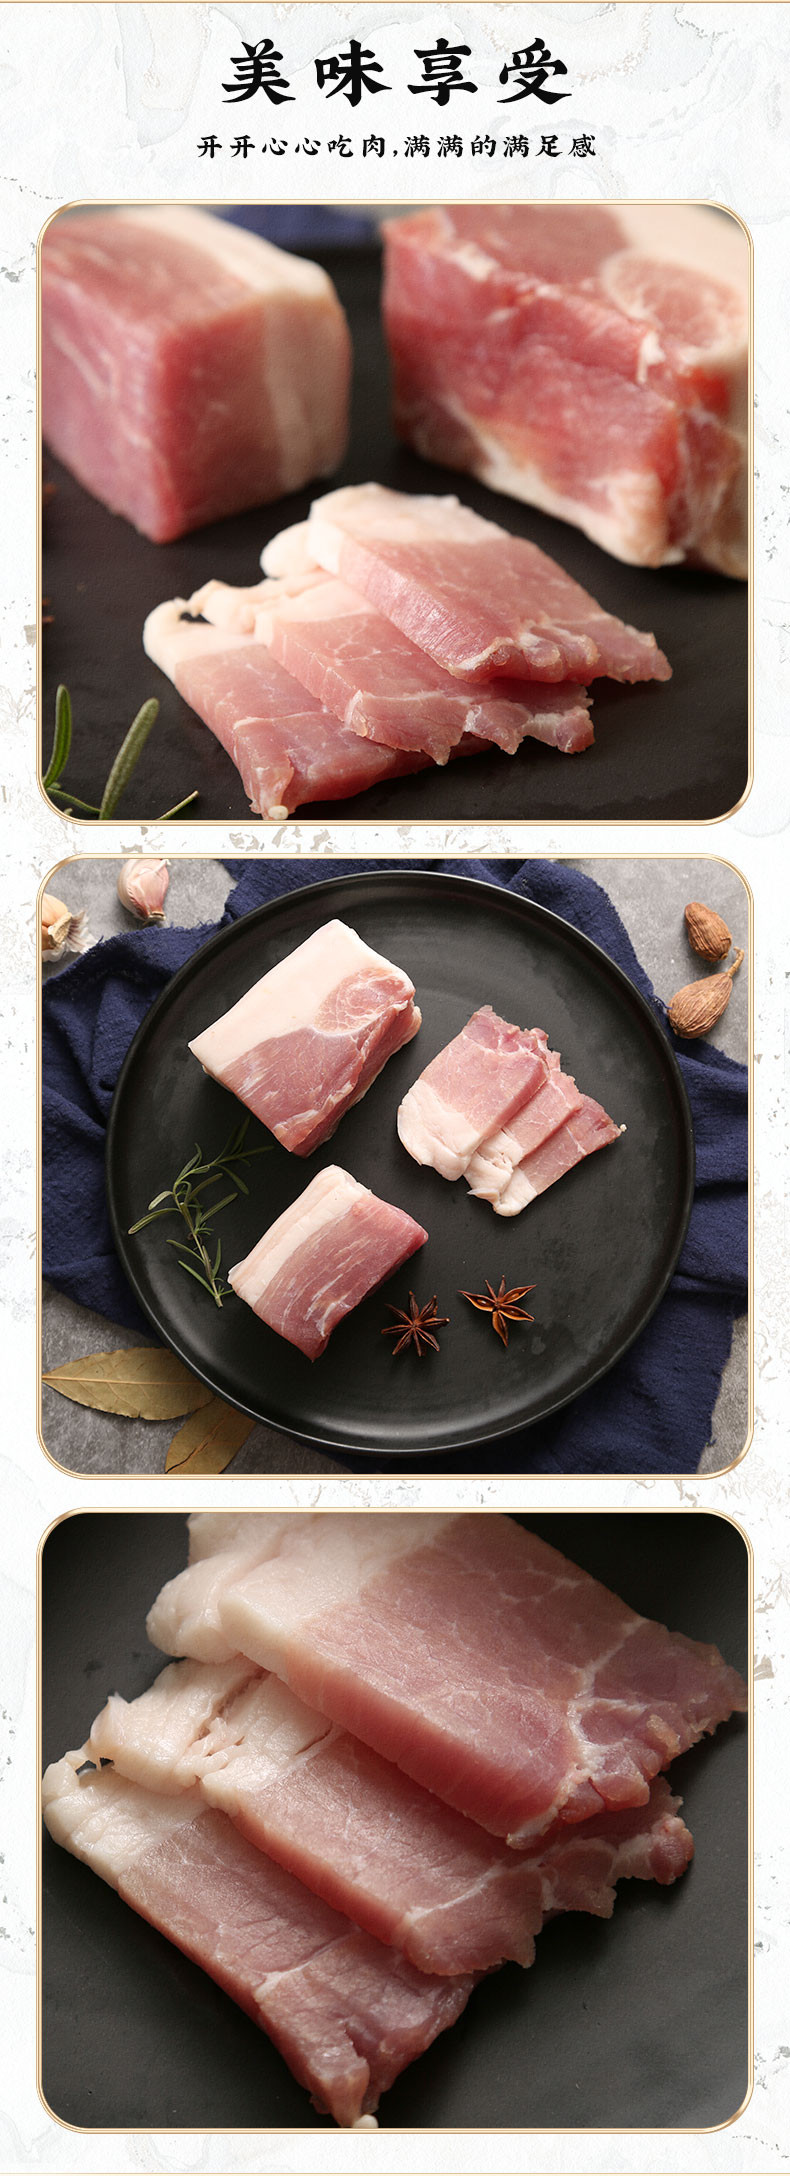  桐香 纯手工腌肉400g礼盒 猪肉肉制品400g礼盒装美味生态腌肉